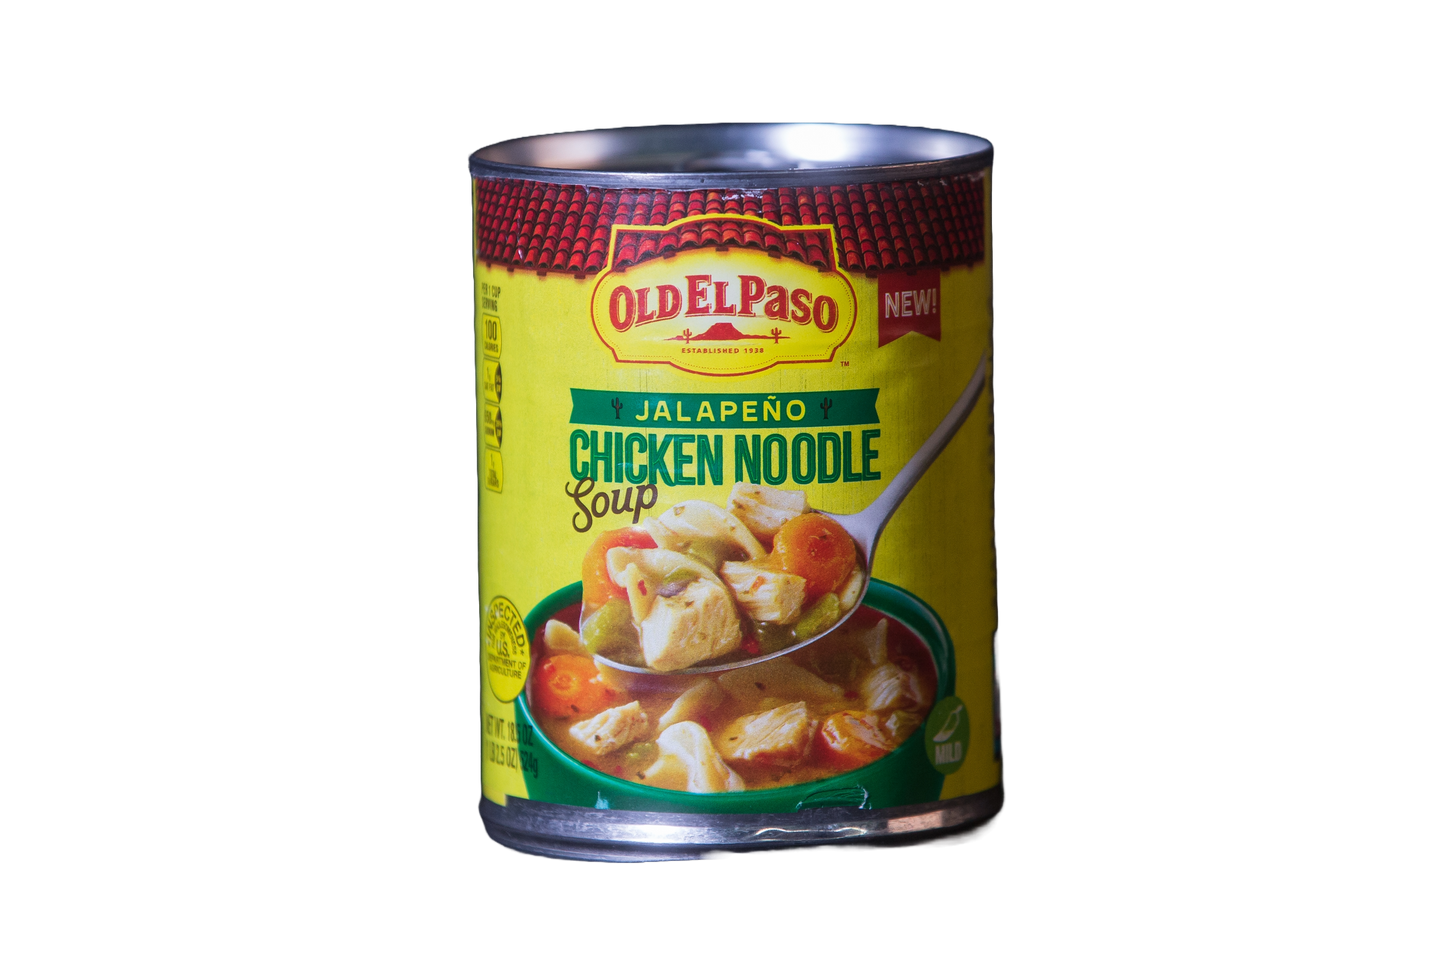 Old El Paso Jalapeño Chicken Noodle Soup, 18.5 oz